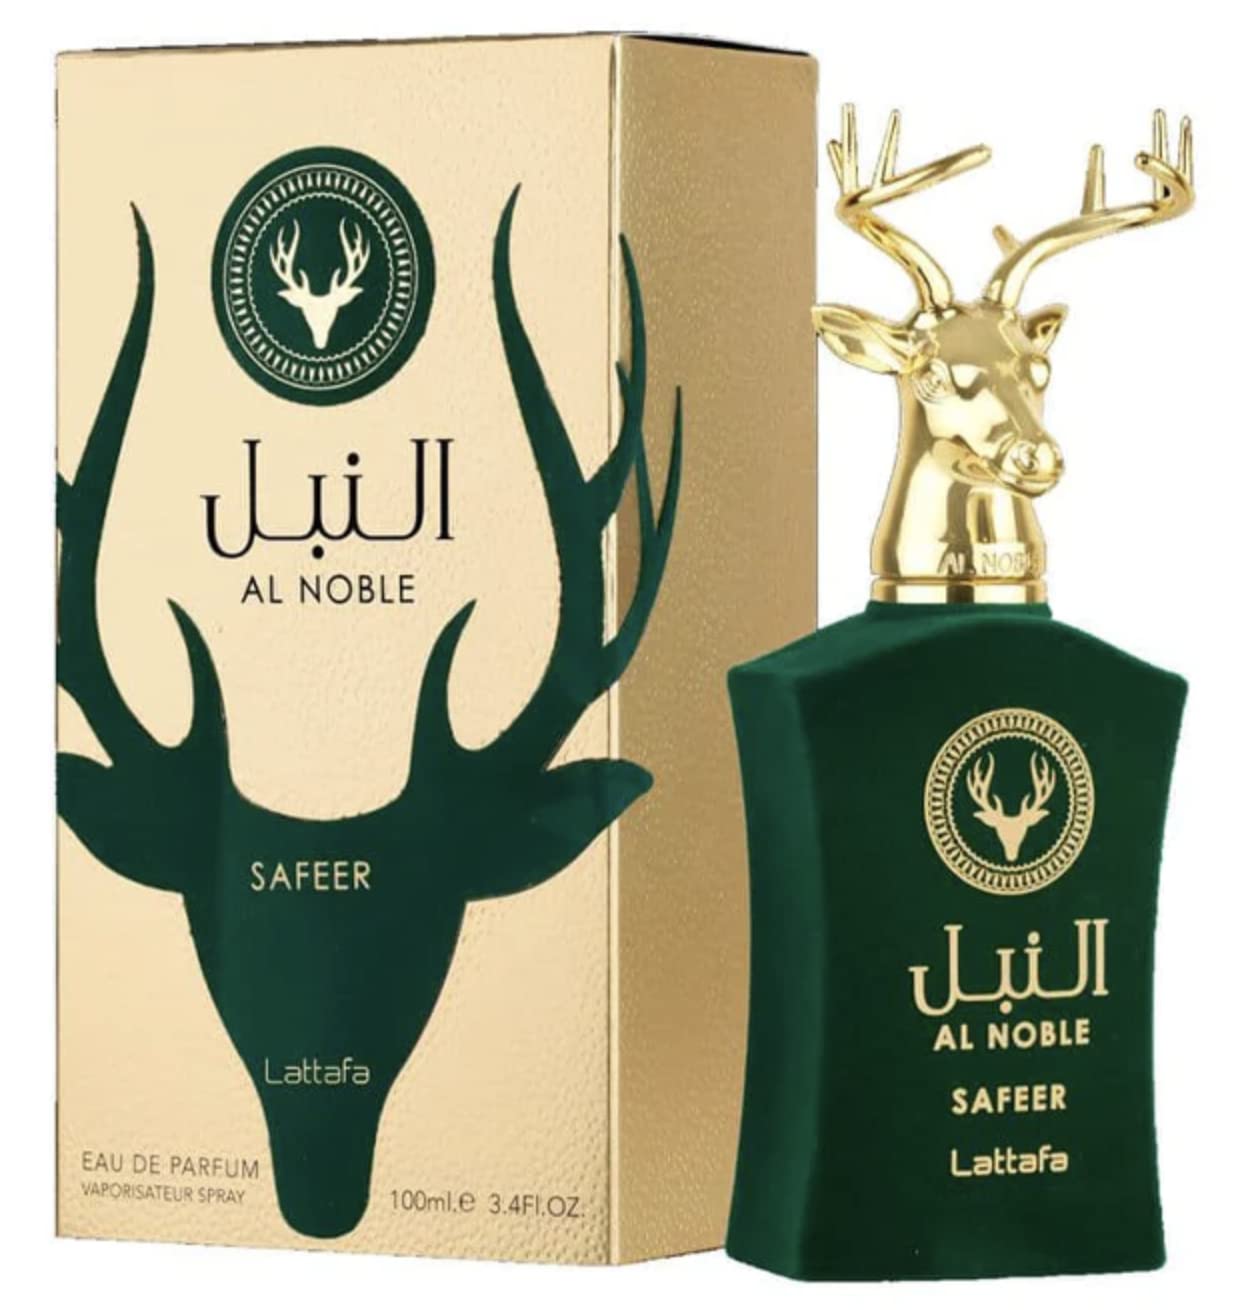 Lattafa Al Noble Safeer Perfume 100ml				